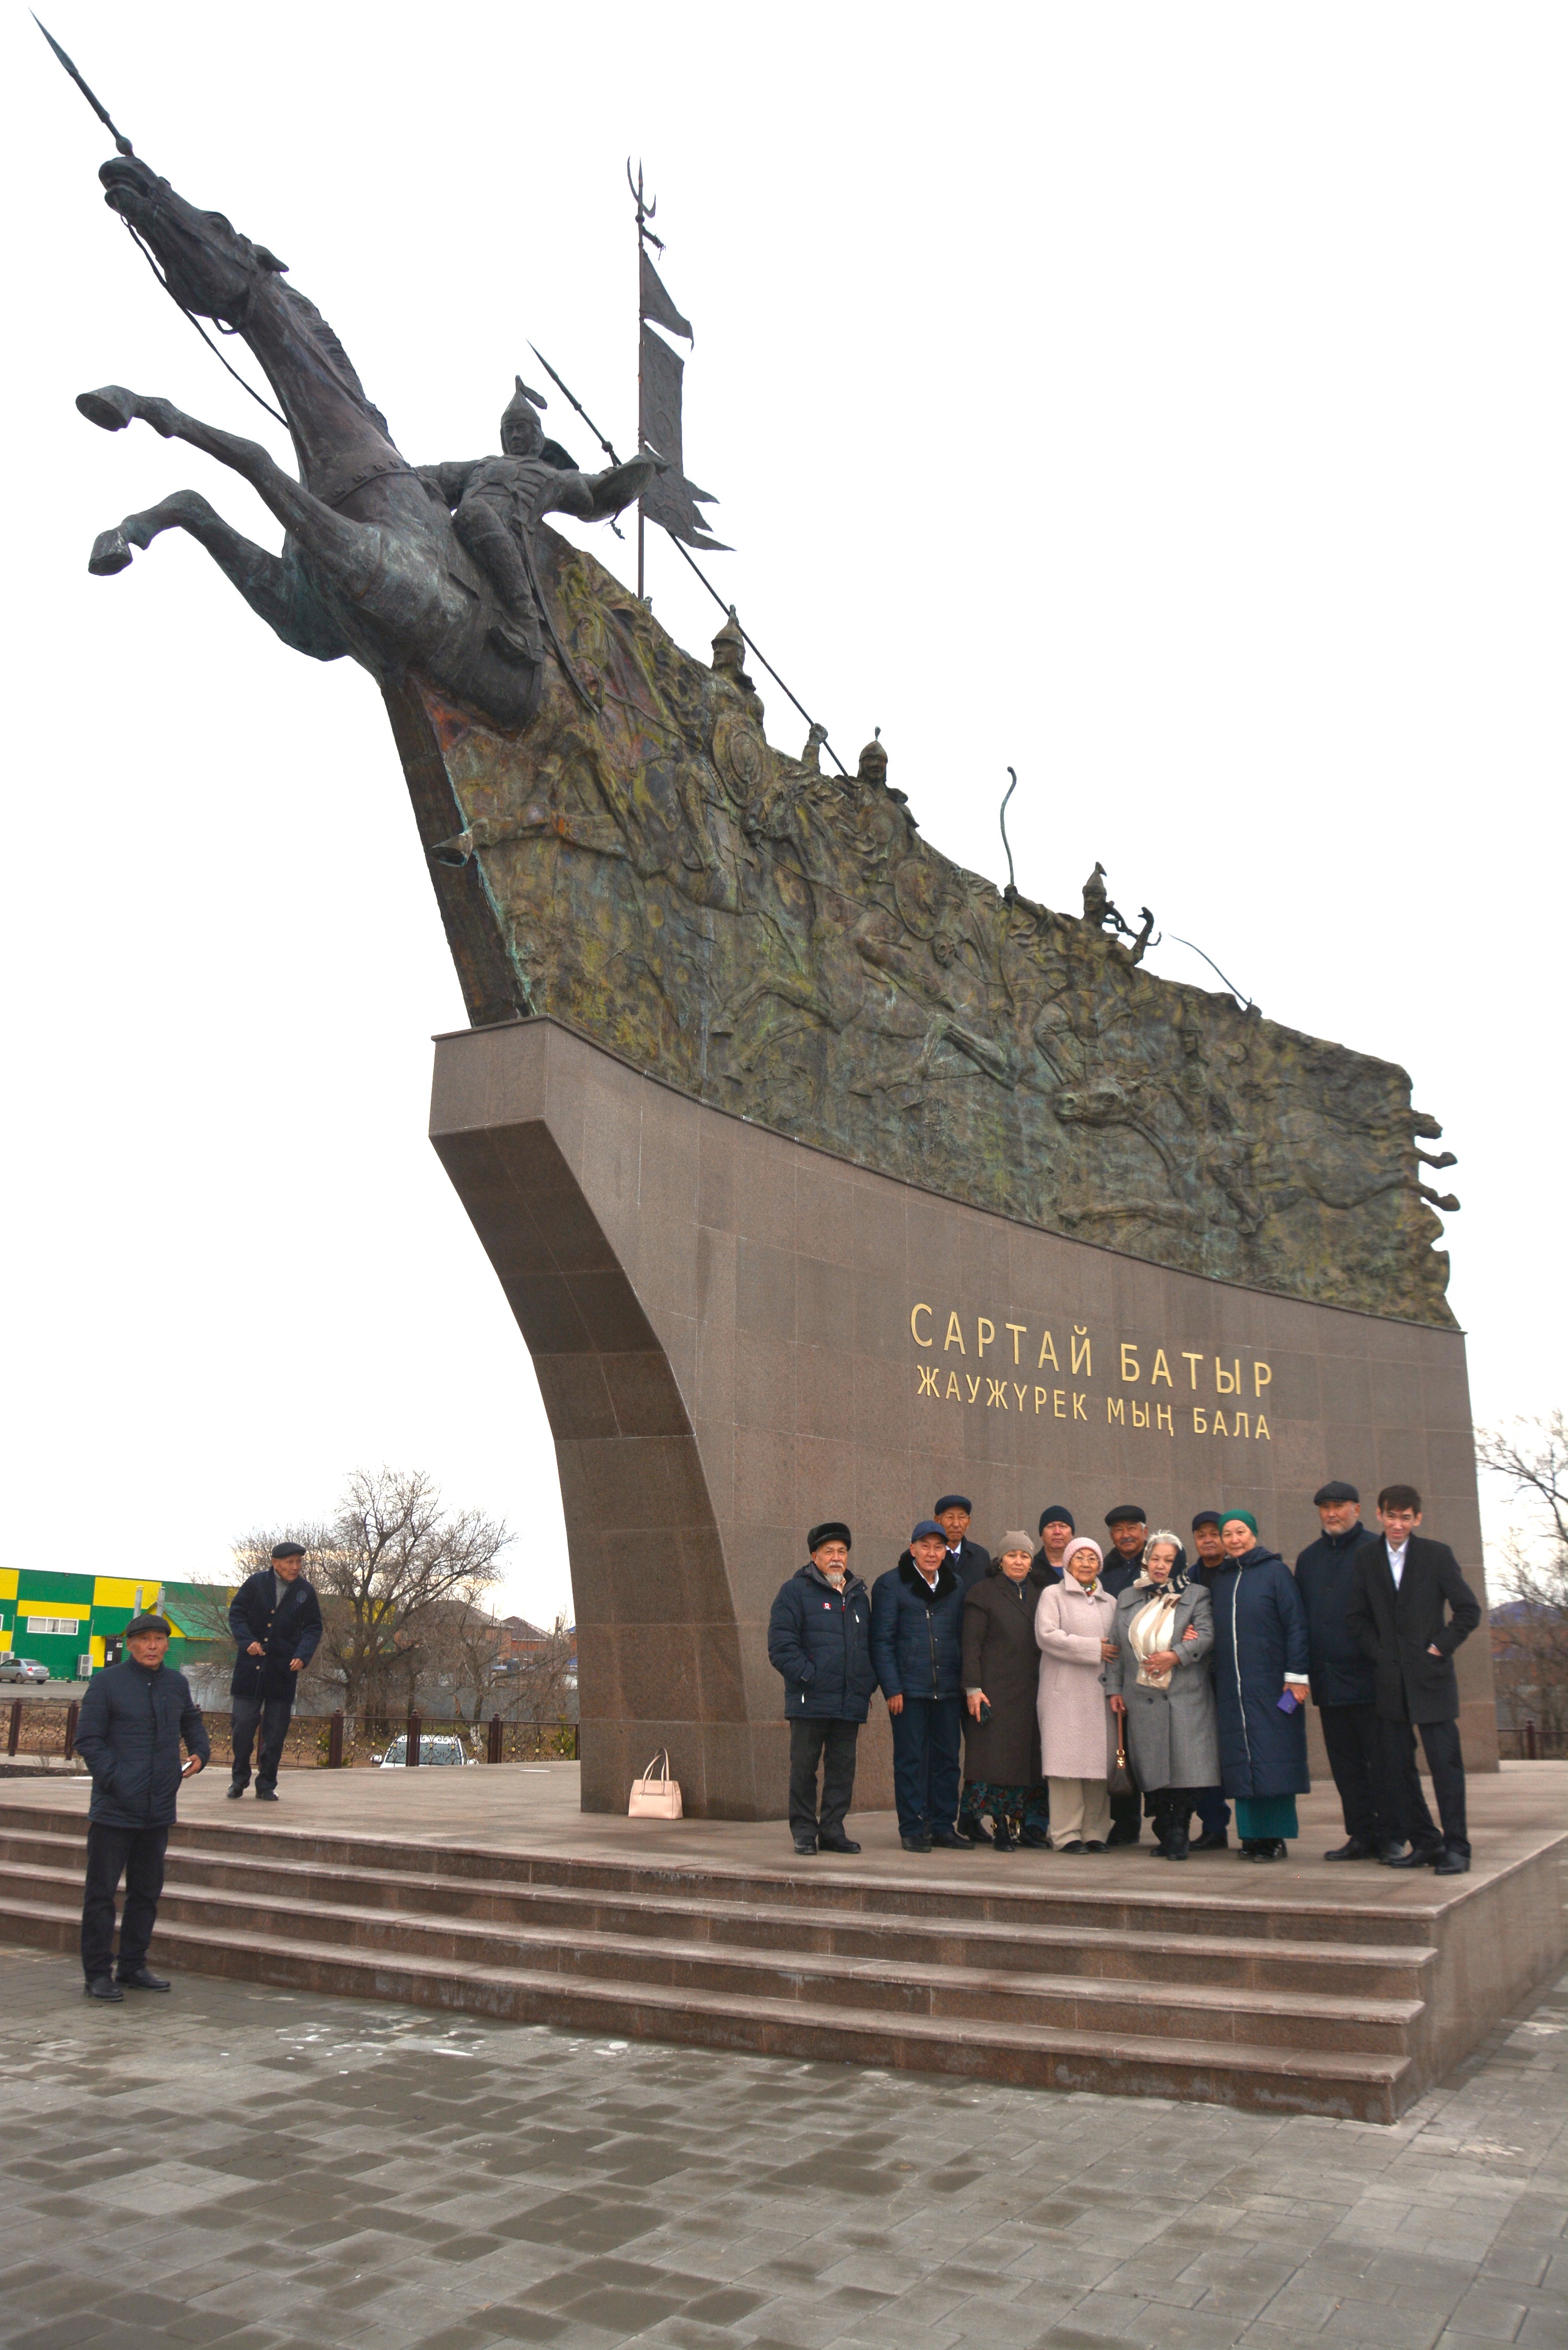 Как создавали памятник Сартай батыру и его воинам, рассказал потомок героя